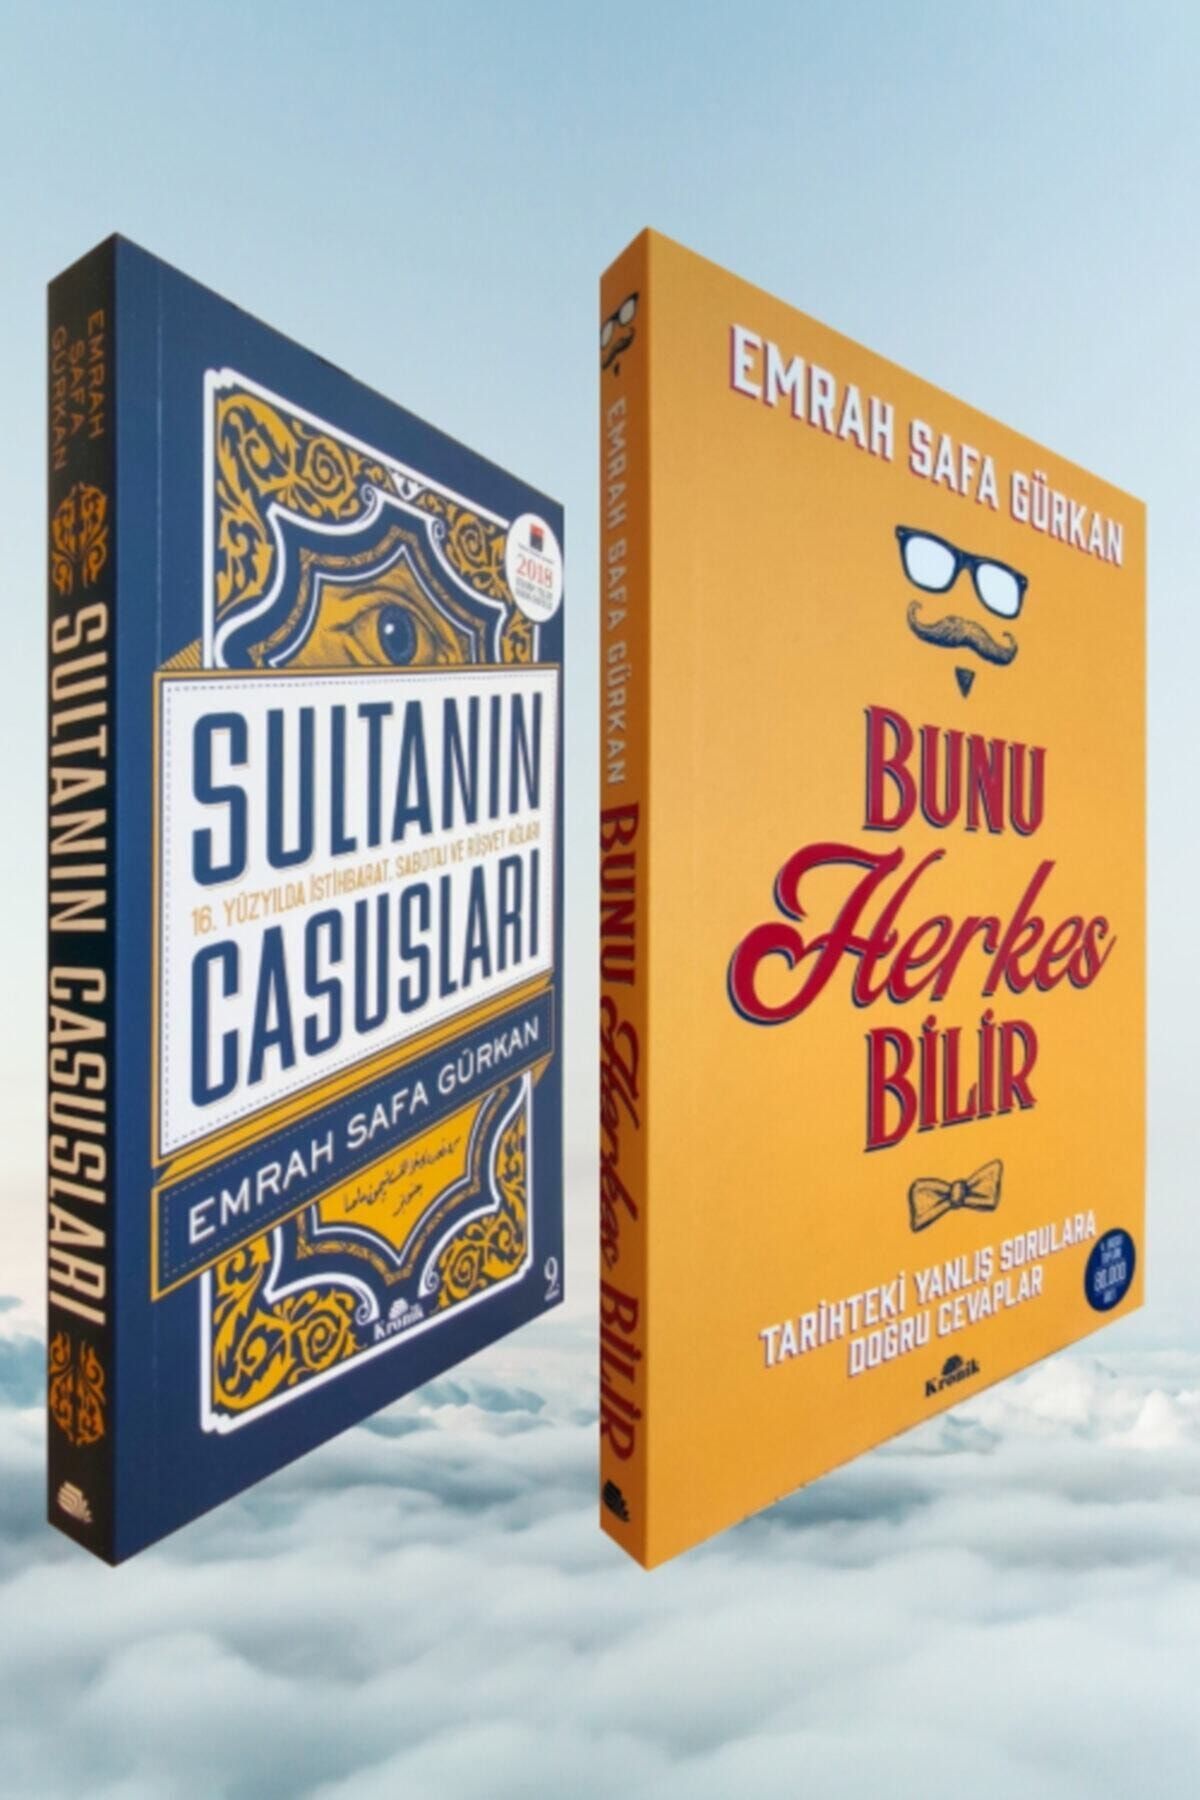 Kronik Kitap Sultanın Casusları-bunu Herkes Bilir Tarihte Yanlış Sorulara Doğru Cevaplr/emrah Safa Gürkan 2 Kitap